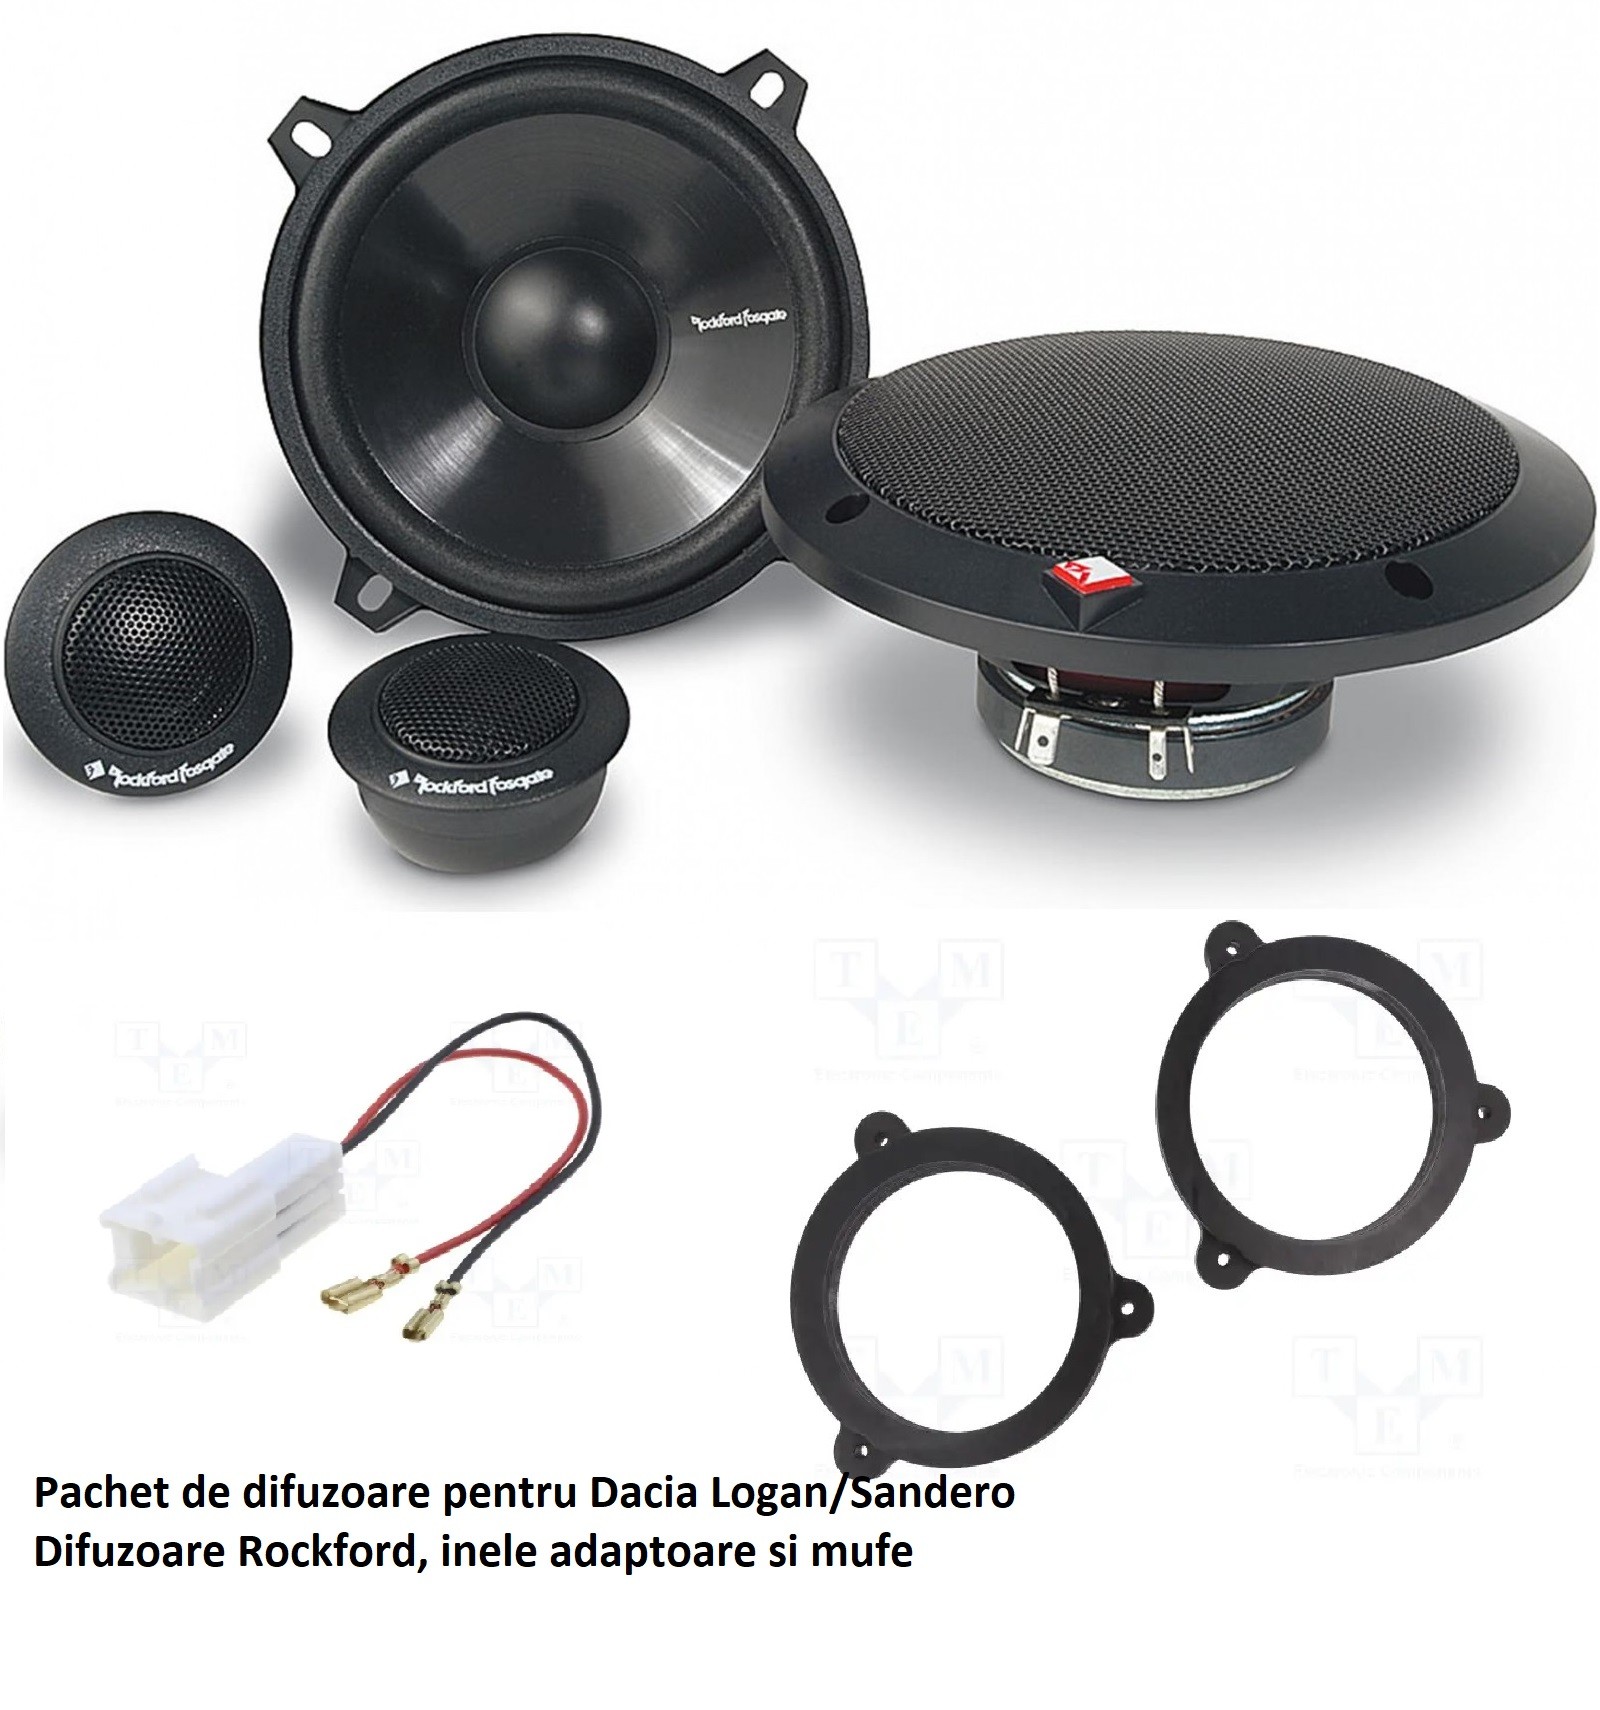 Dacia Rockford Speakers Package